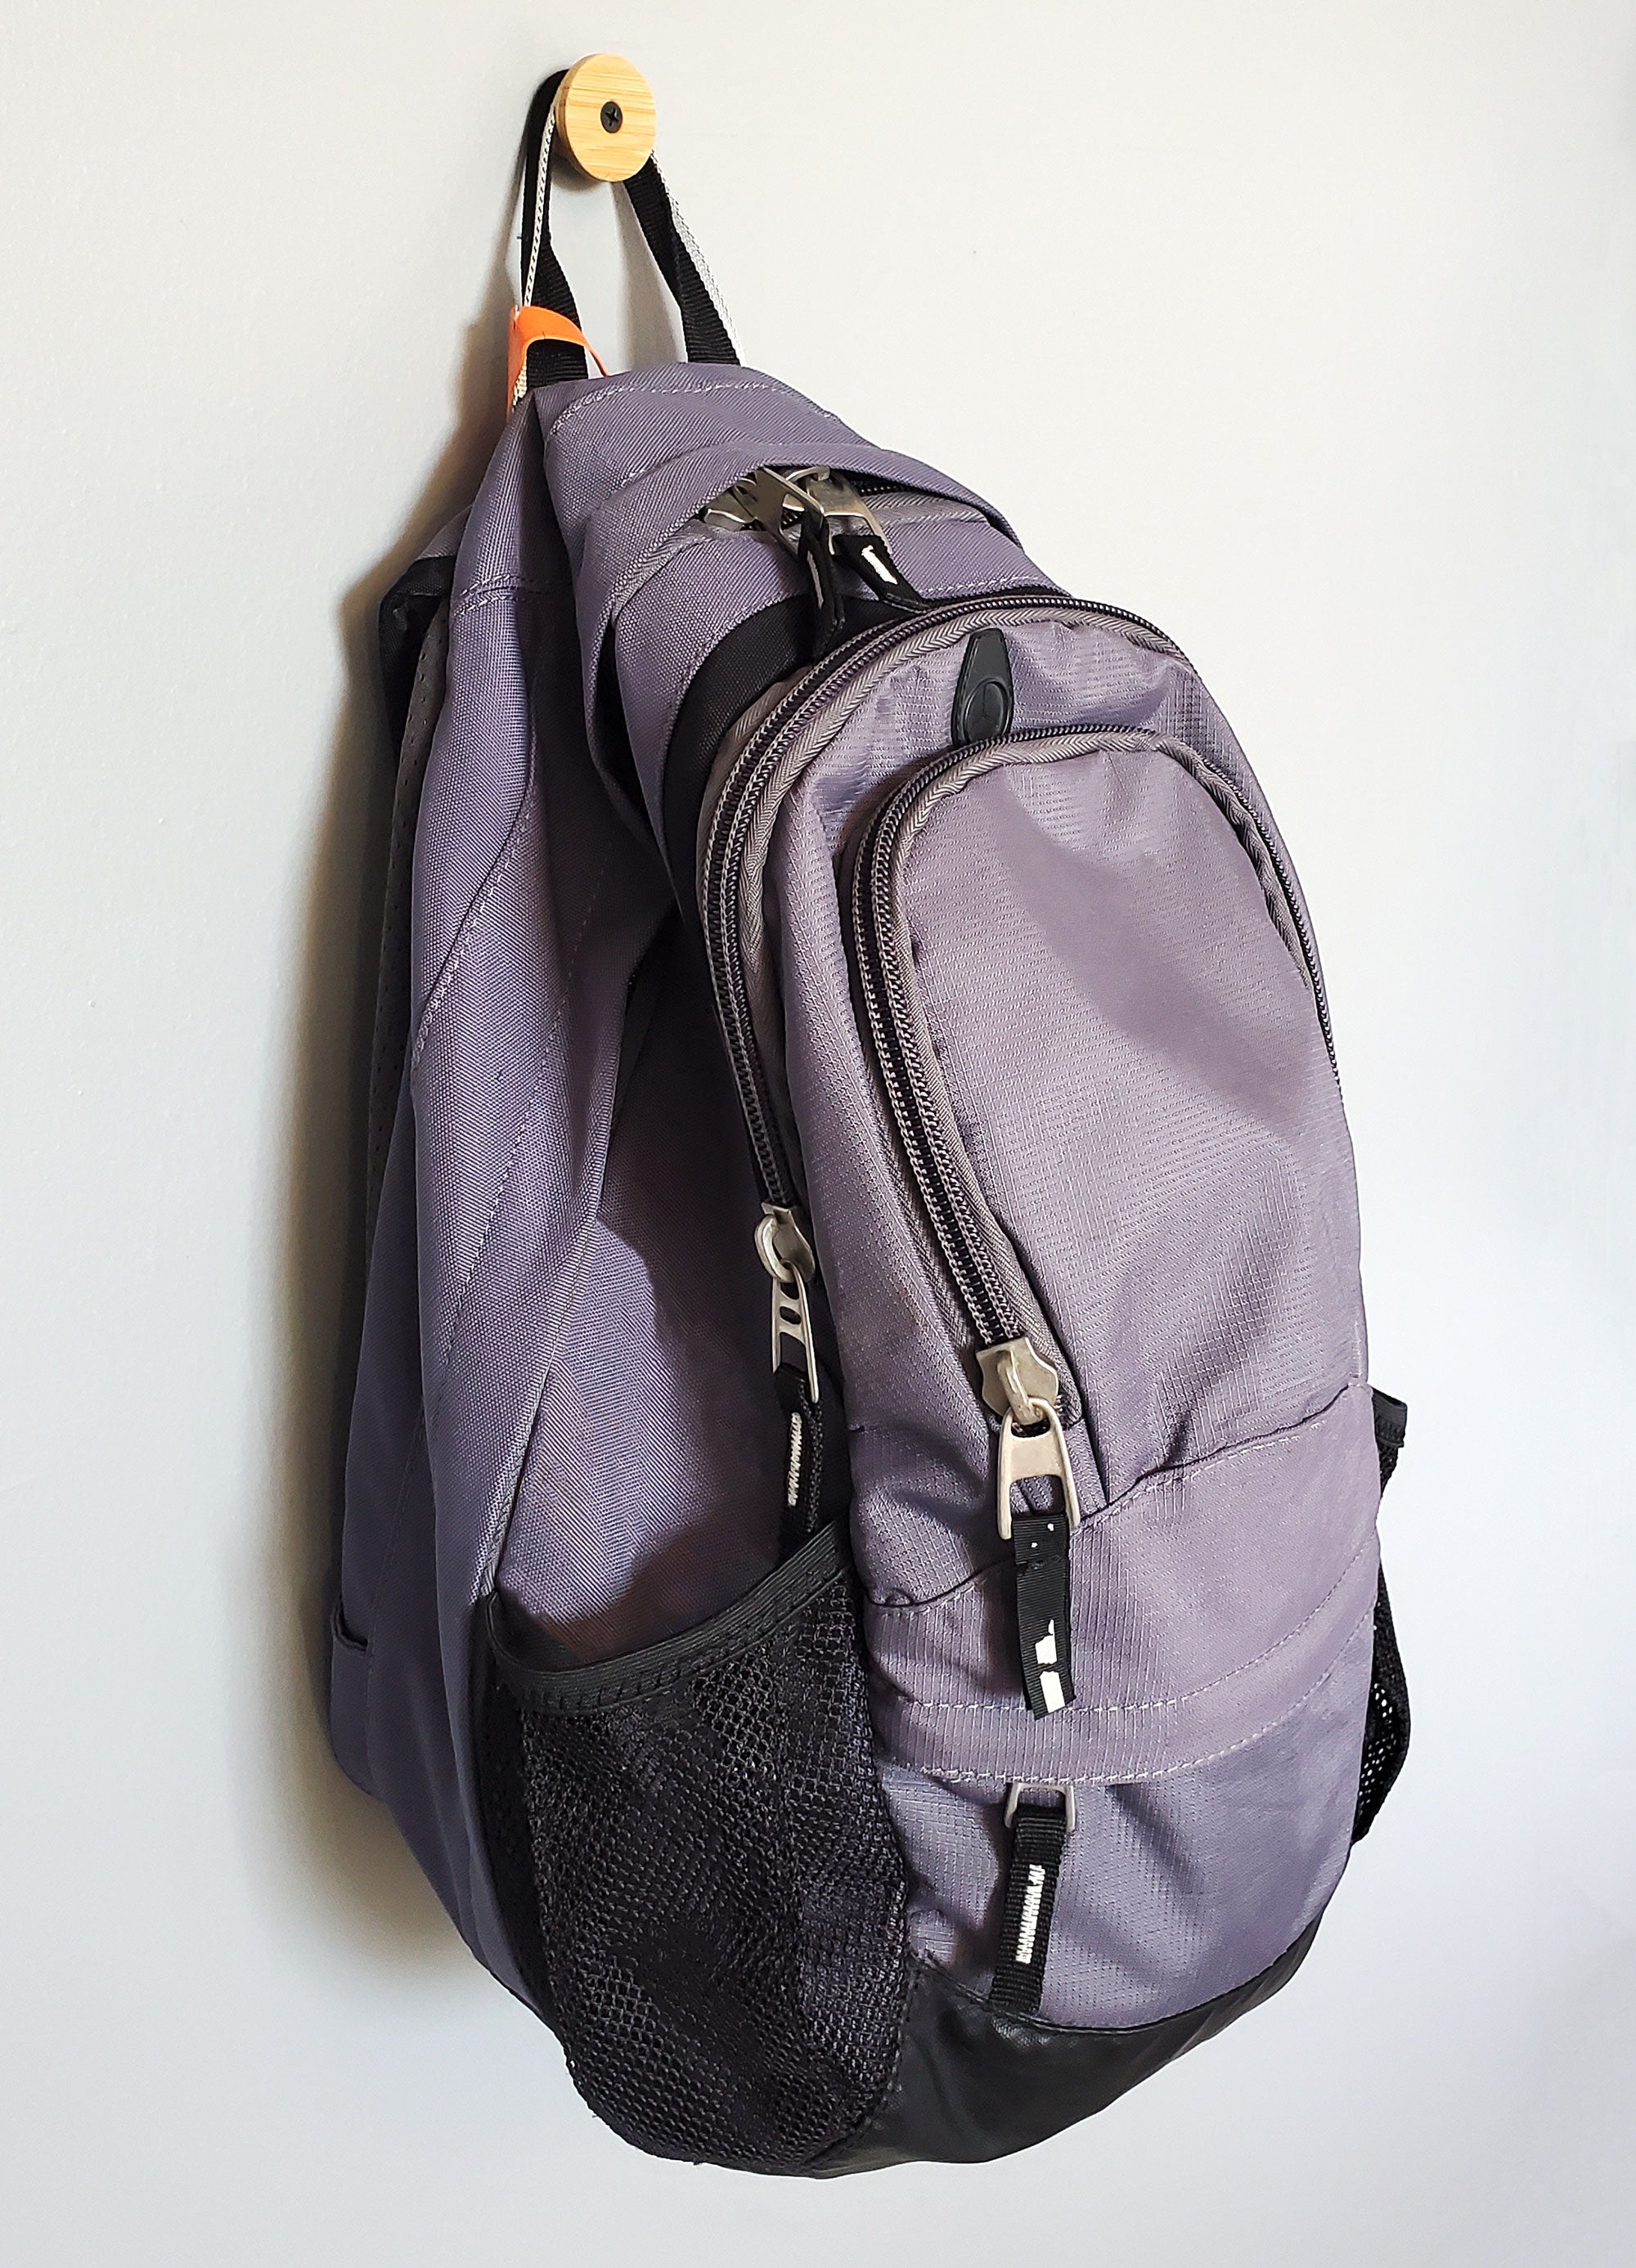 Flush Backpack Organizer - Hanger for Bag